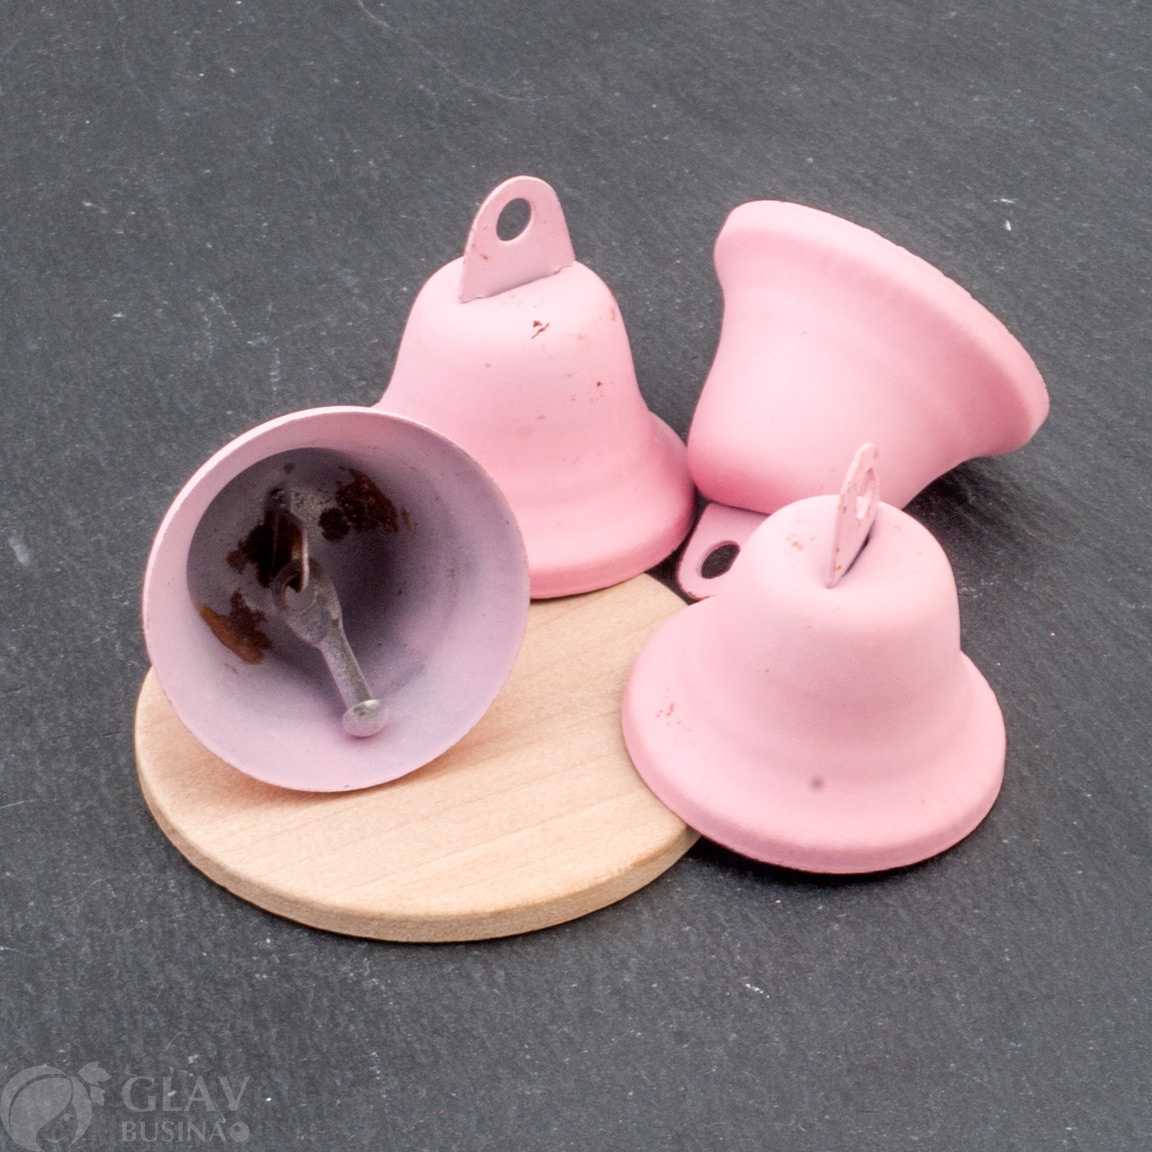 Металлические колокольчики винтажного розового цвета, диаметр 38мм, отличного качества, цена за 1 шт. - украшения для создания стильных бижутерий.